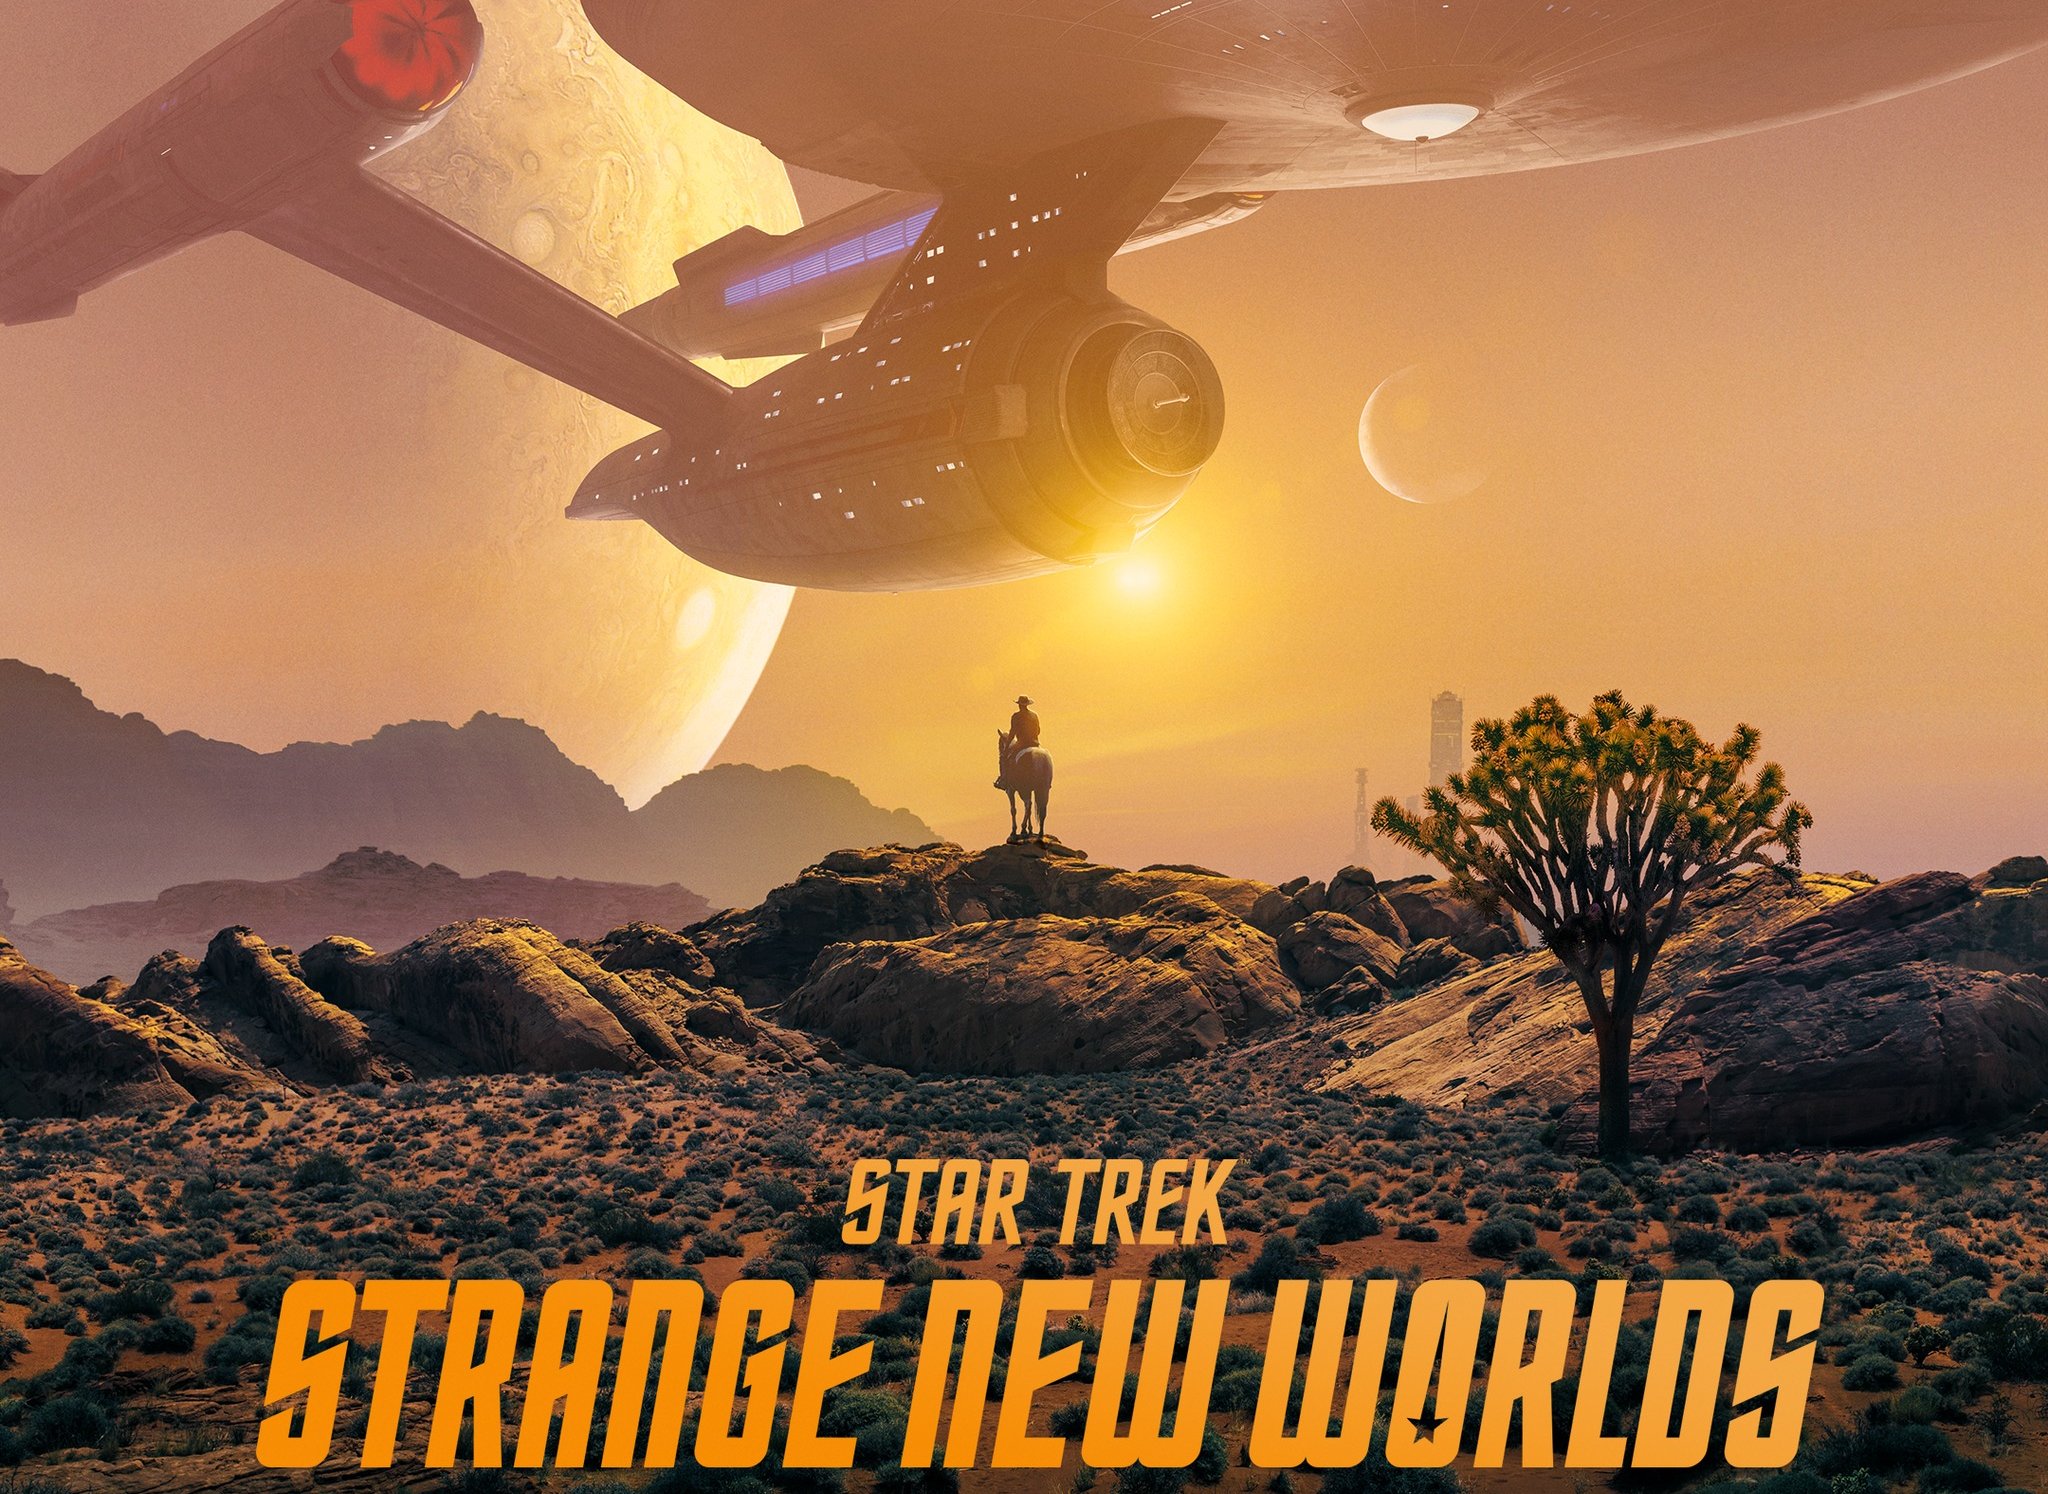 Star Trek Strange New Worlds Wallpapers  Wallpaper Cave